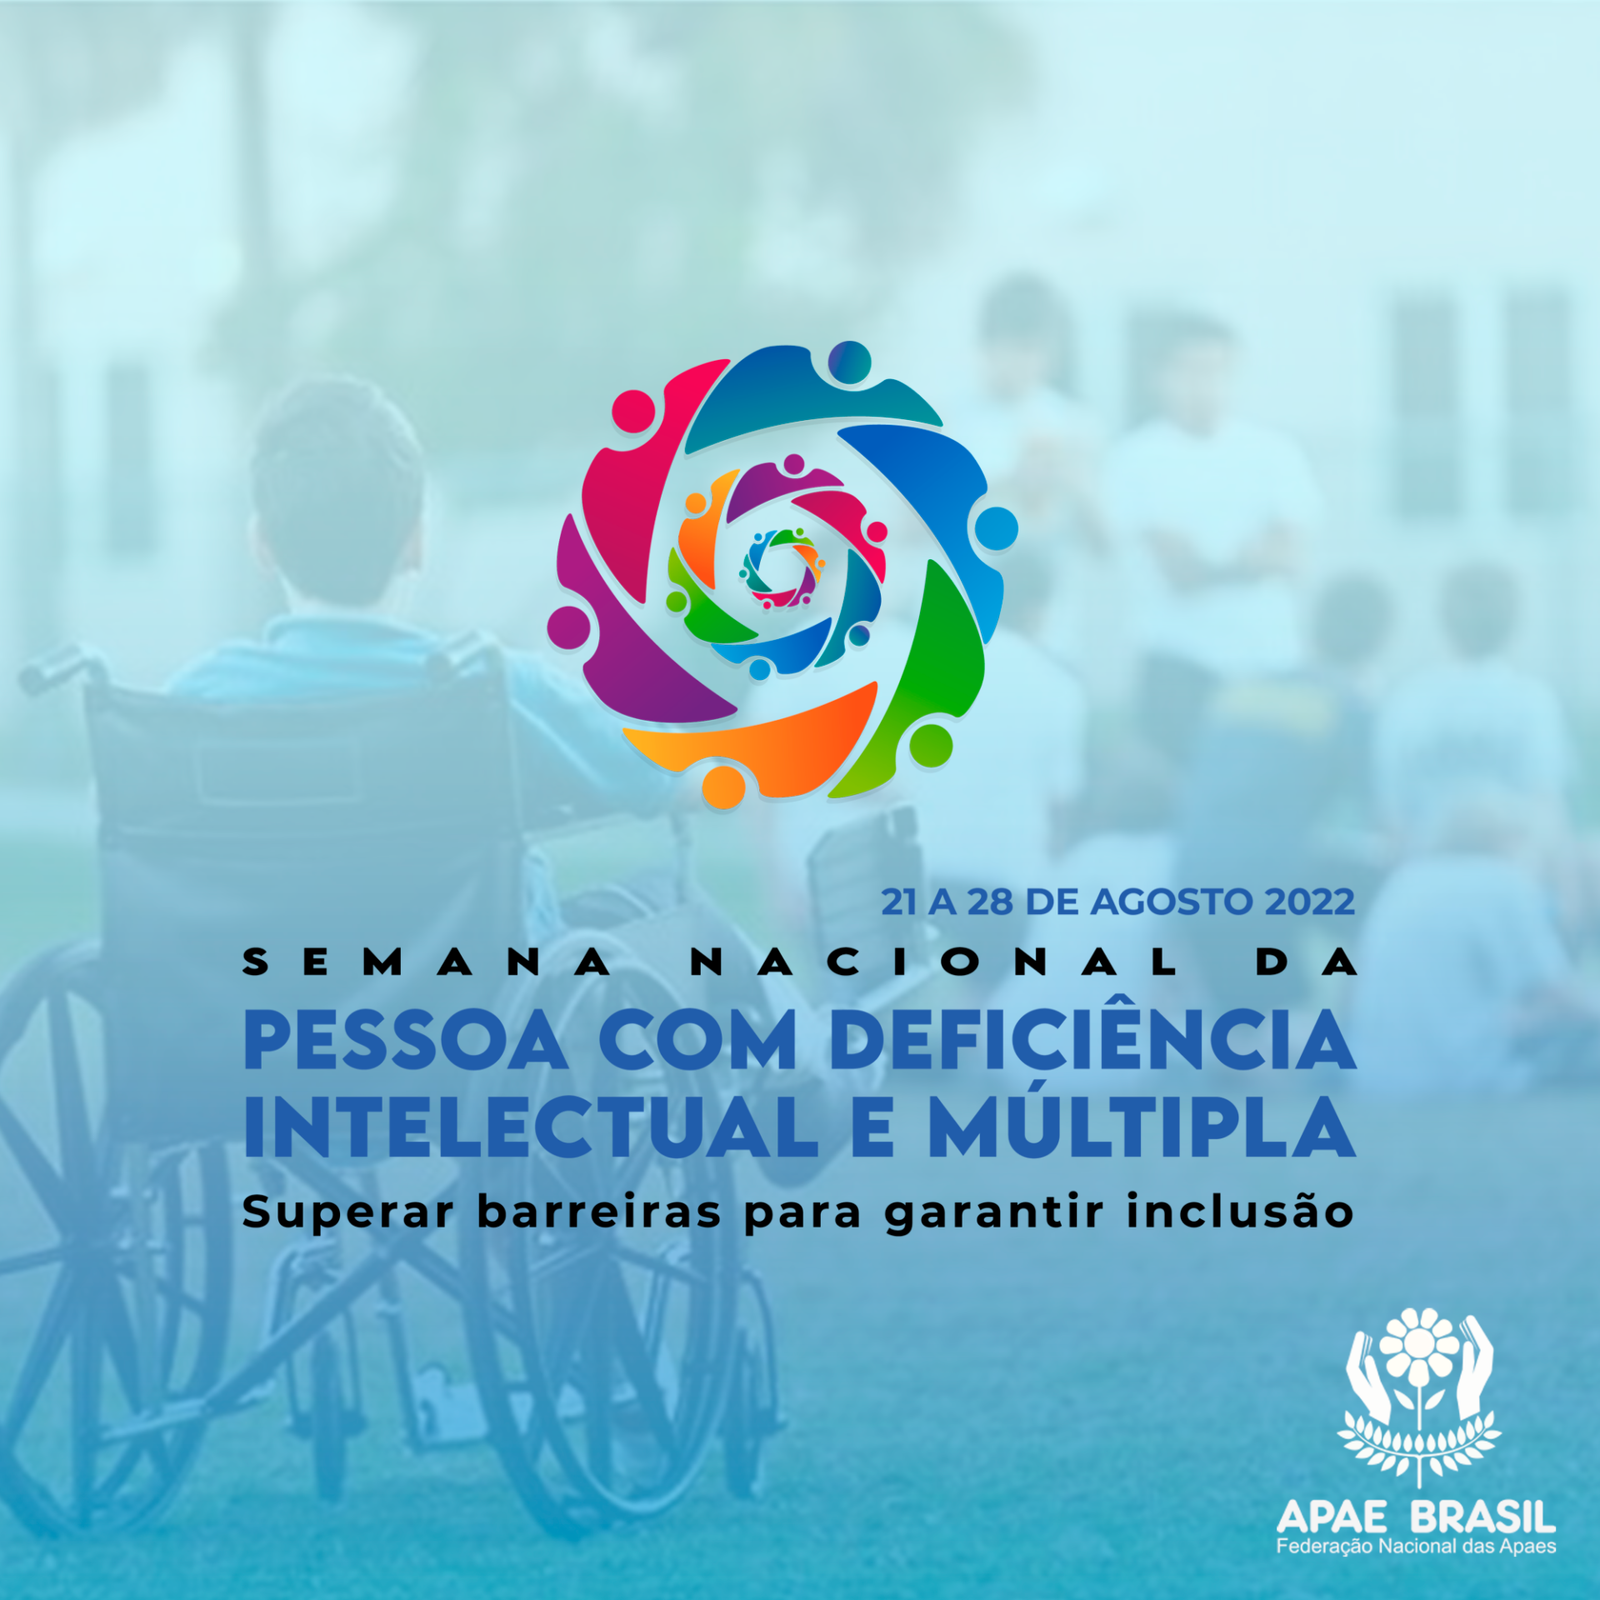 Semana Nacional da Pessoa com Deficiência Intelectual e Múltipla 2022